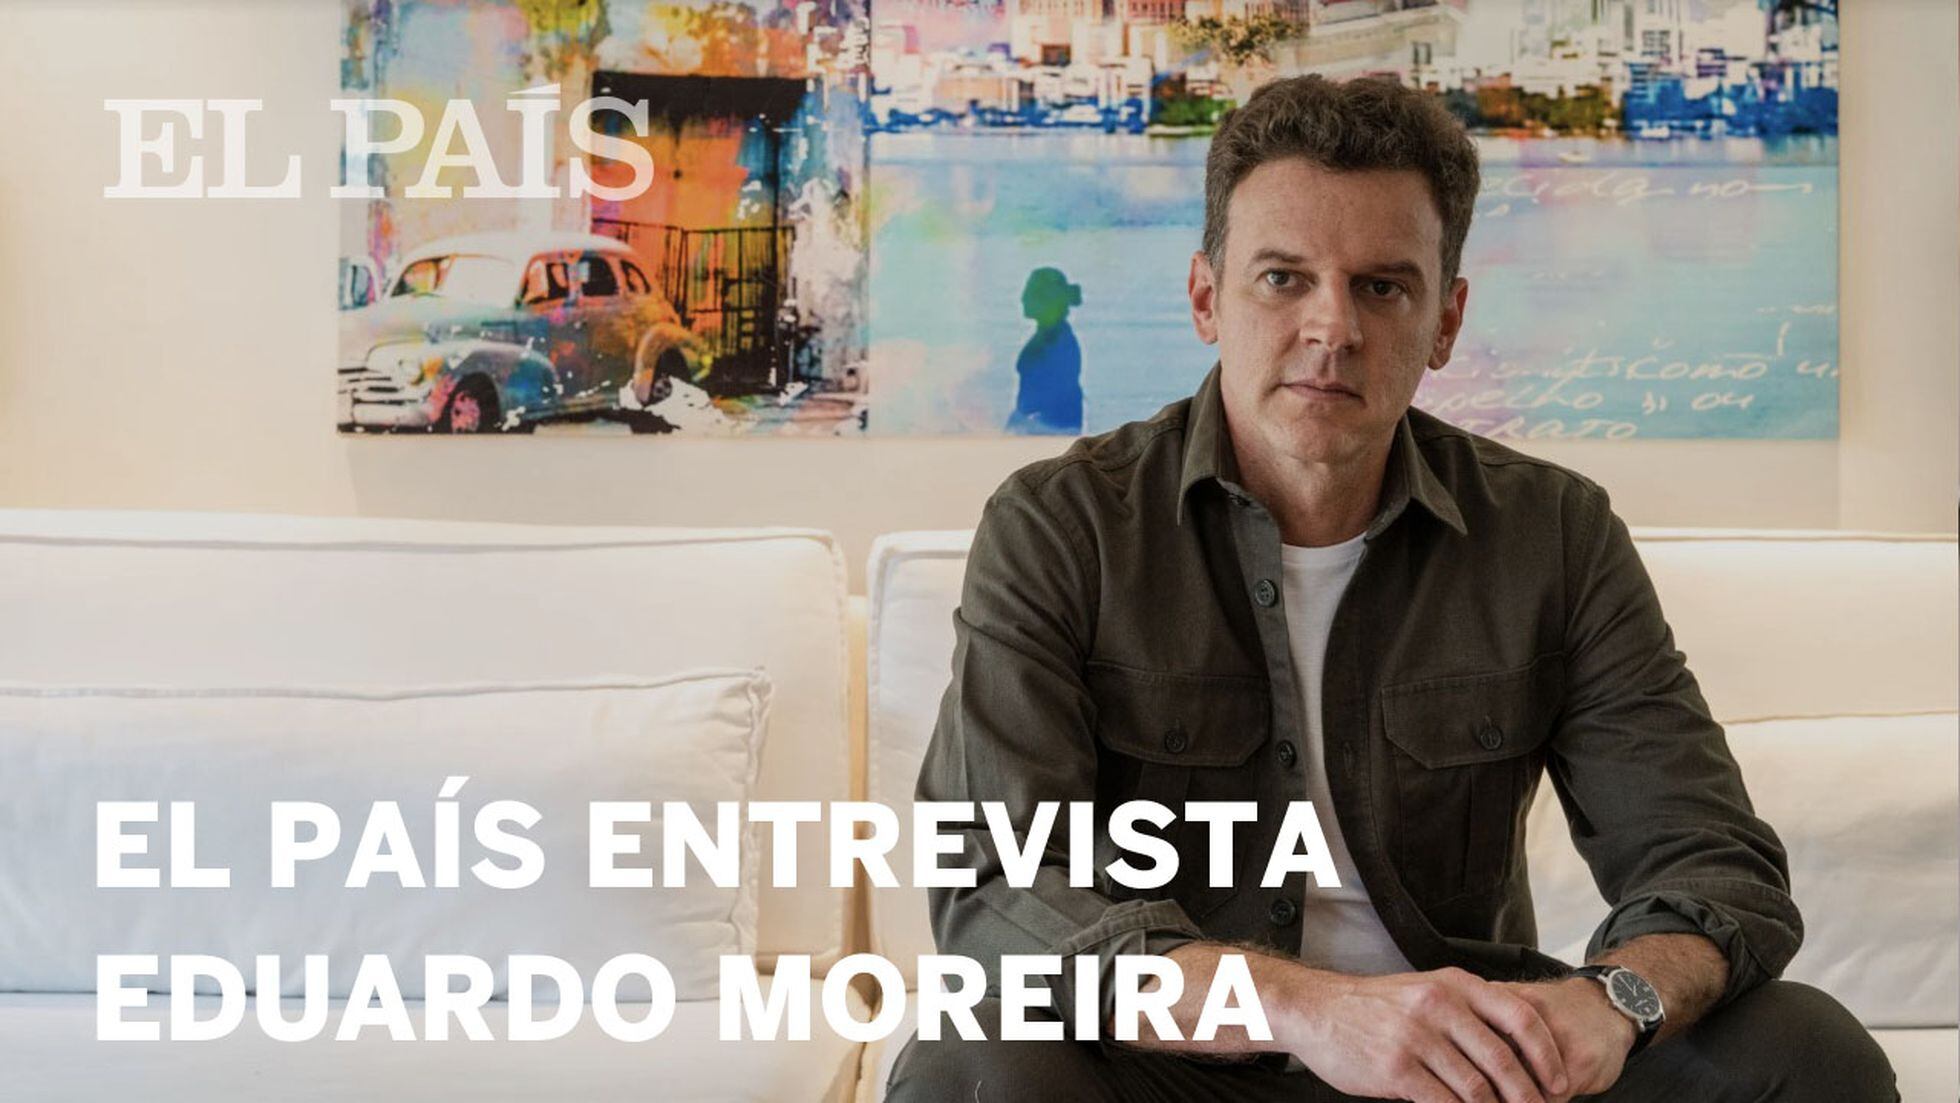 Eduardo Moreira macetando o primo rico : r/brasil